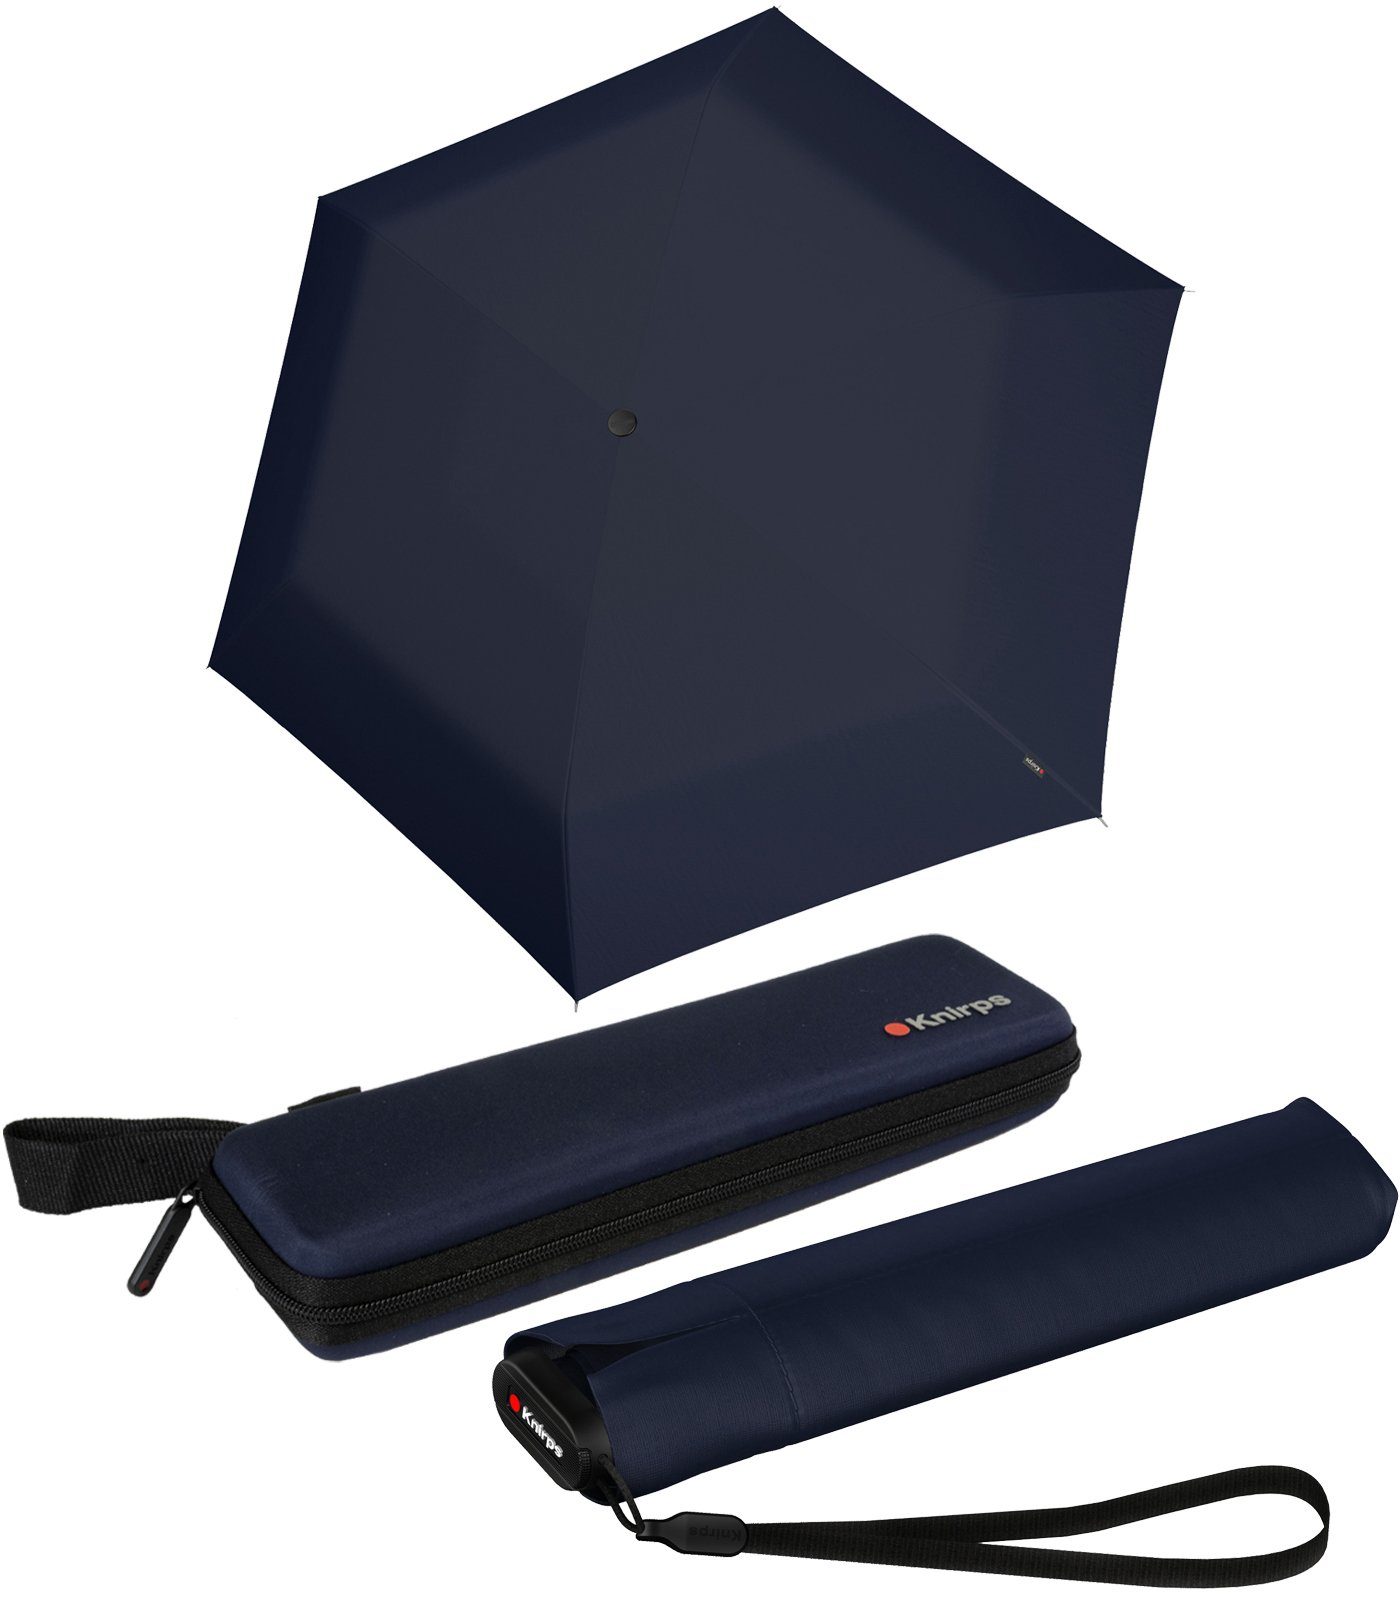 Taschenregenschirm stabilen extrem navy-blau super US.050 und Etui, Light leicht Ultra Knirps® Slim Manual kompakt im